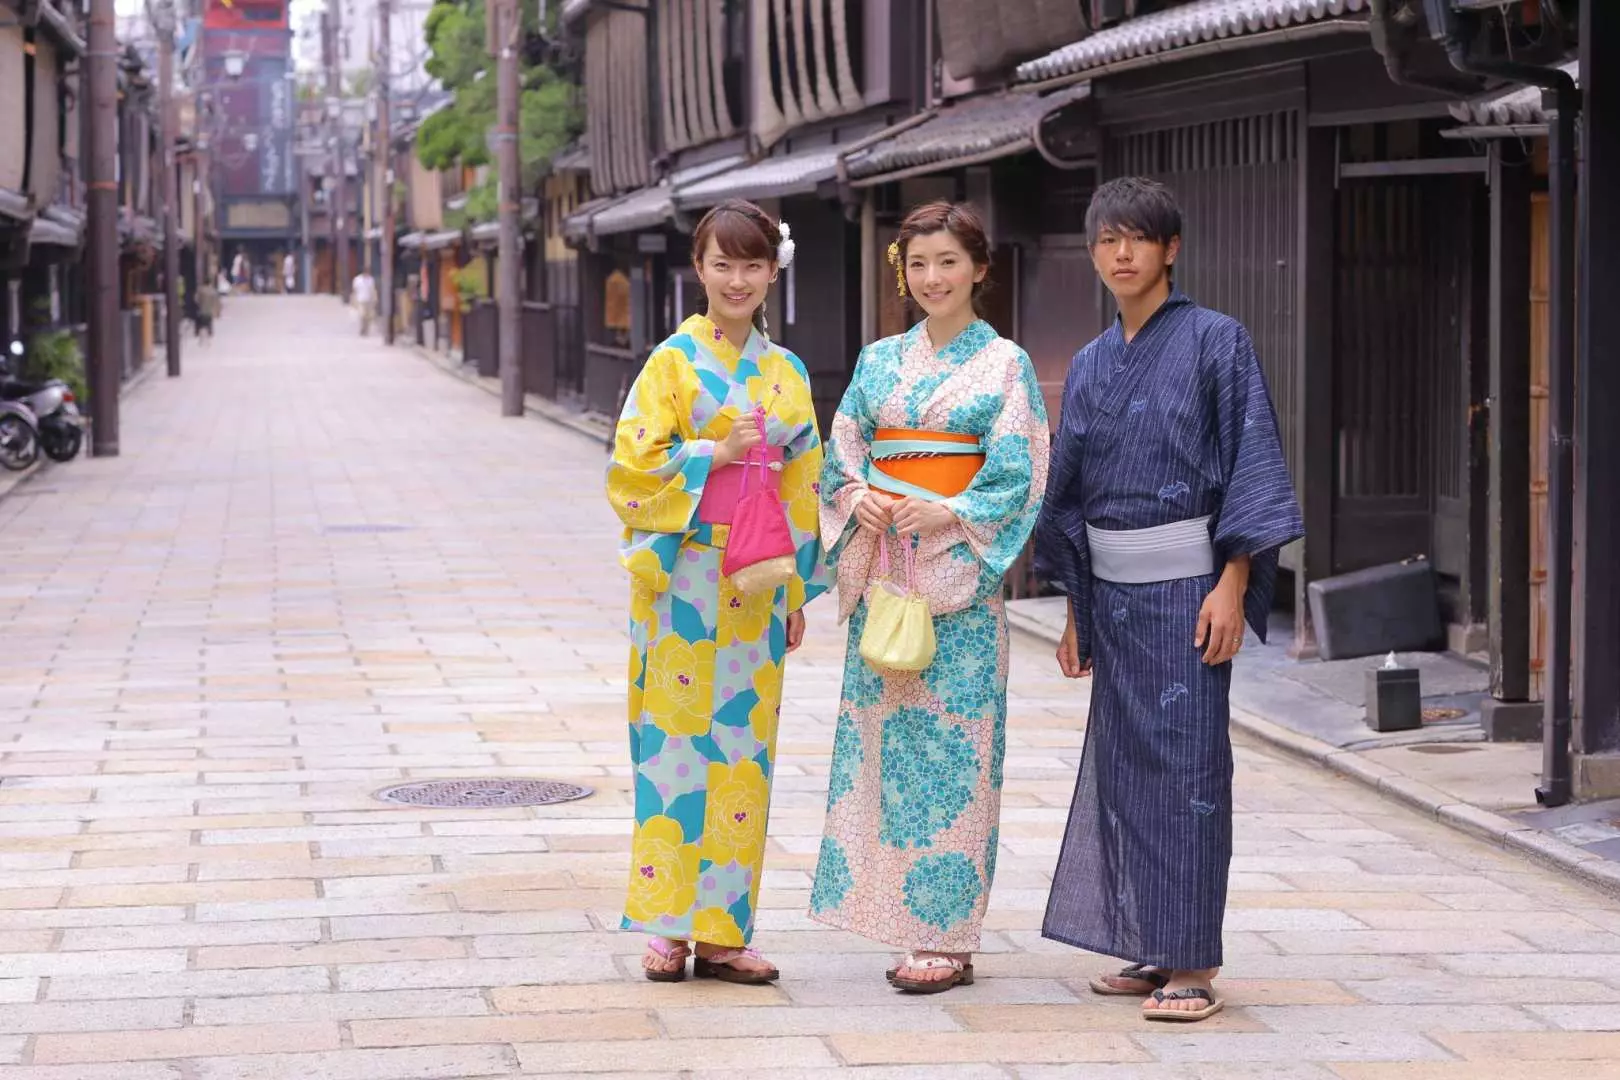 【京都和服體驗】清水道四季櫻花和服體驗